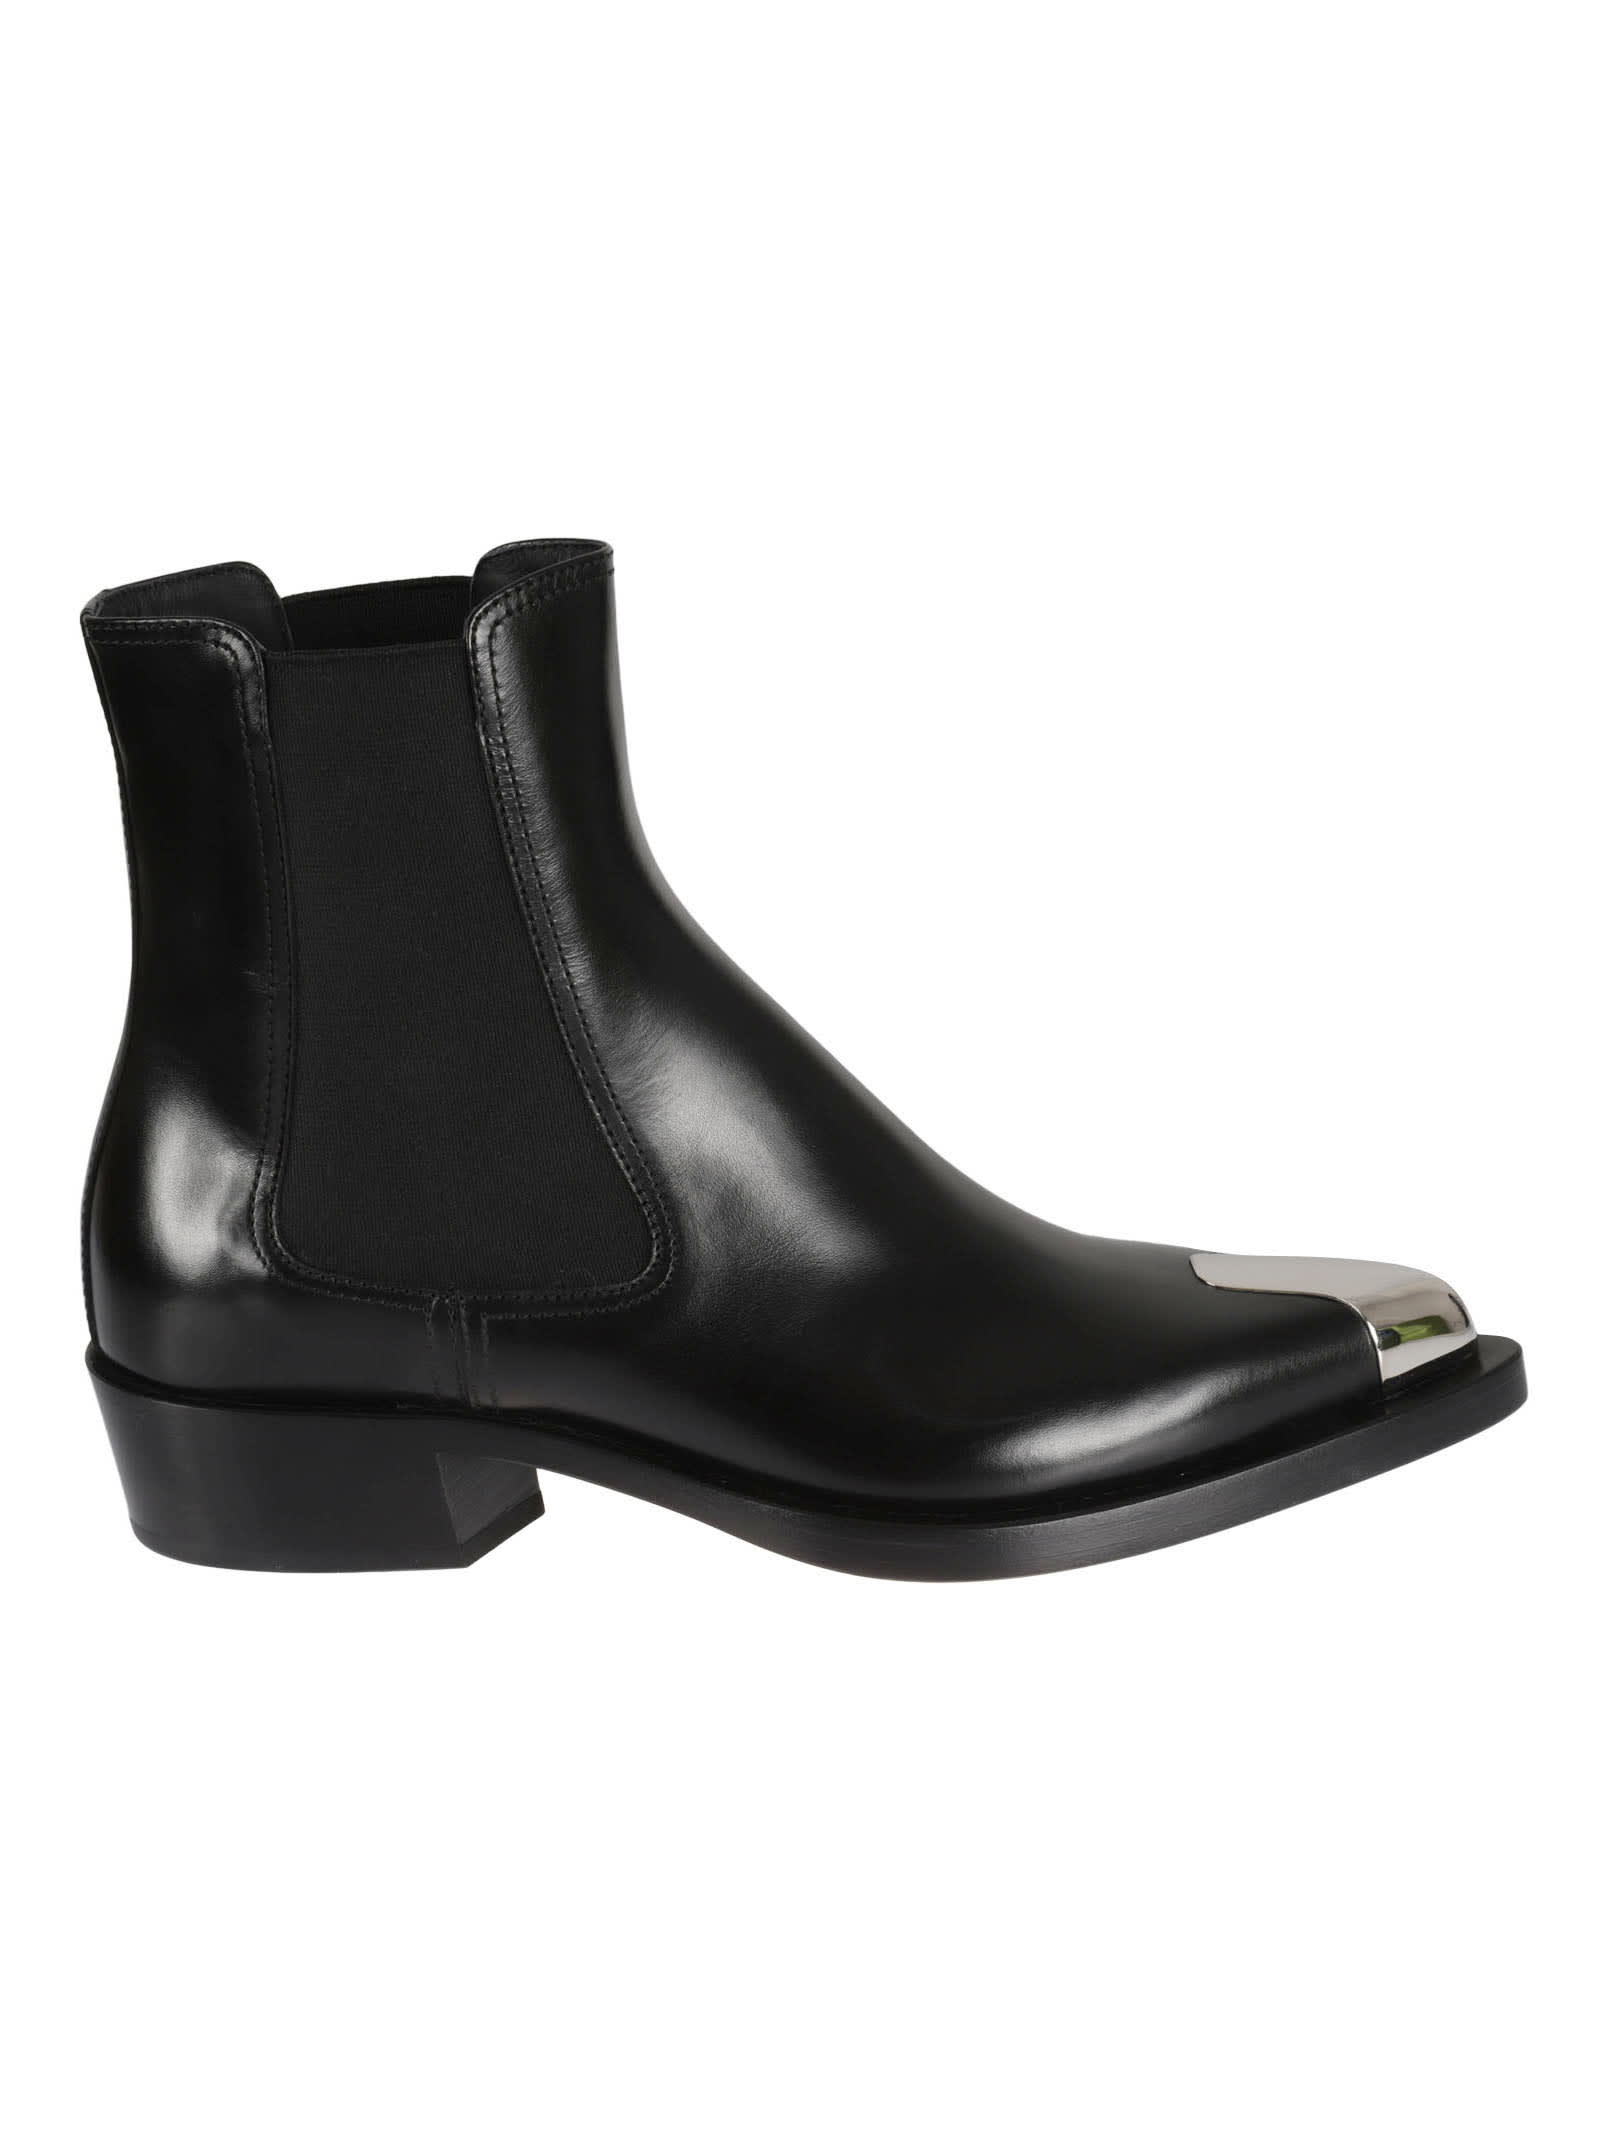 Alexander Mcqueen Metallic Toe Boots In Black/silver